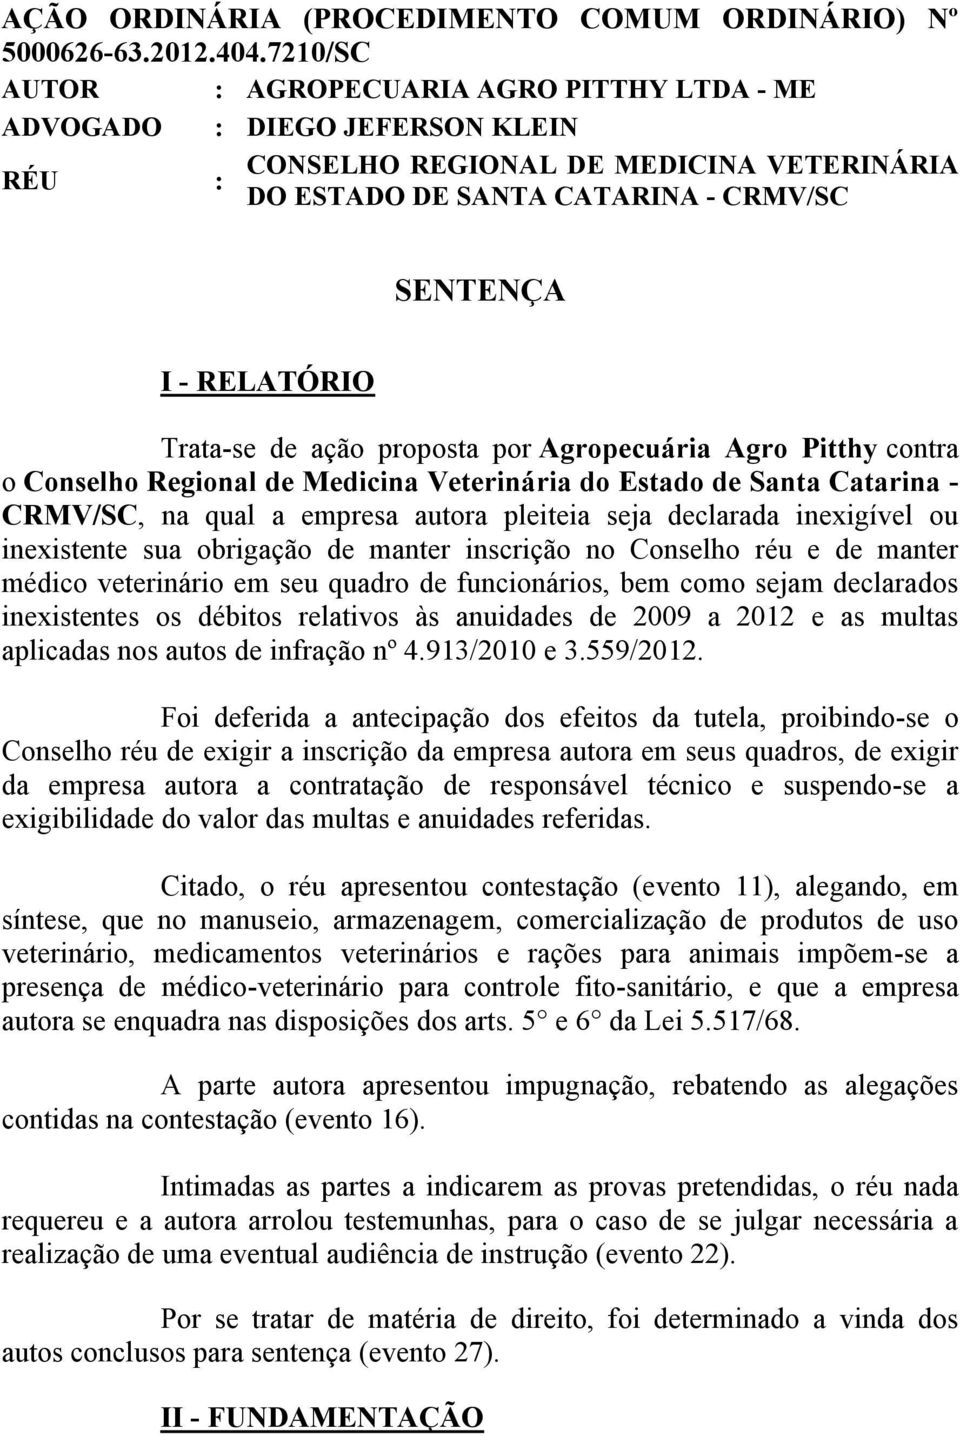 Trata-se de ação proposta por Agropecuária Agro Pitthy contra o Conselho Regional de Medicina Veterinária do Estado de Santa Catarina - CRMV/SC, na qual a empresa autora pleiteia seja declarada